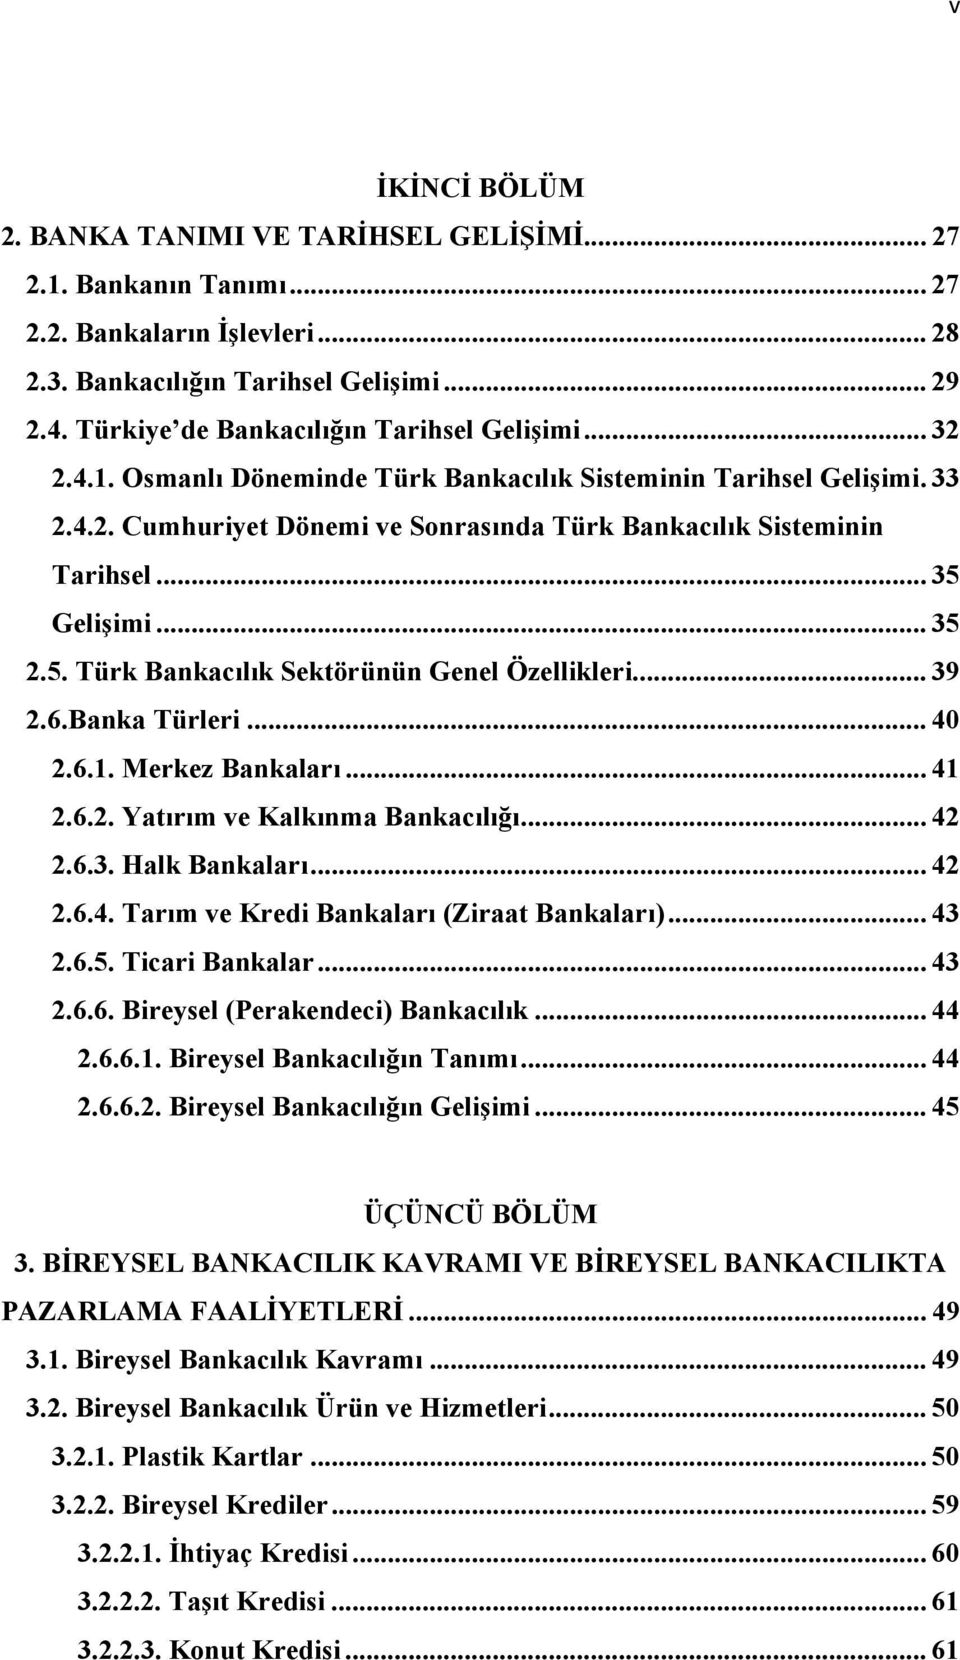 .. 35 Gelişimi... 35 2.5. Türk Bankacılık Sektörünün Genel Özellikleri... 39 2.6.Banka Türleri... 40 2.6.1. Merkez Bankaları... 41 2.6.2. Yatırım ve Kalkınma Bankacılığı... 42 2.6.3. Halk Bankaları.